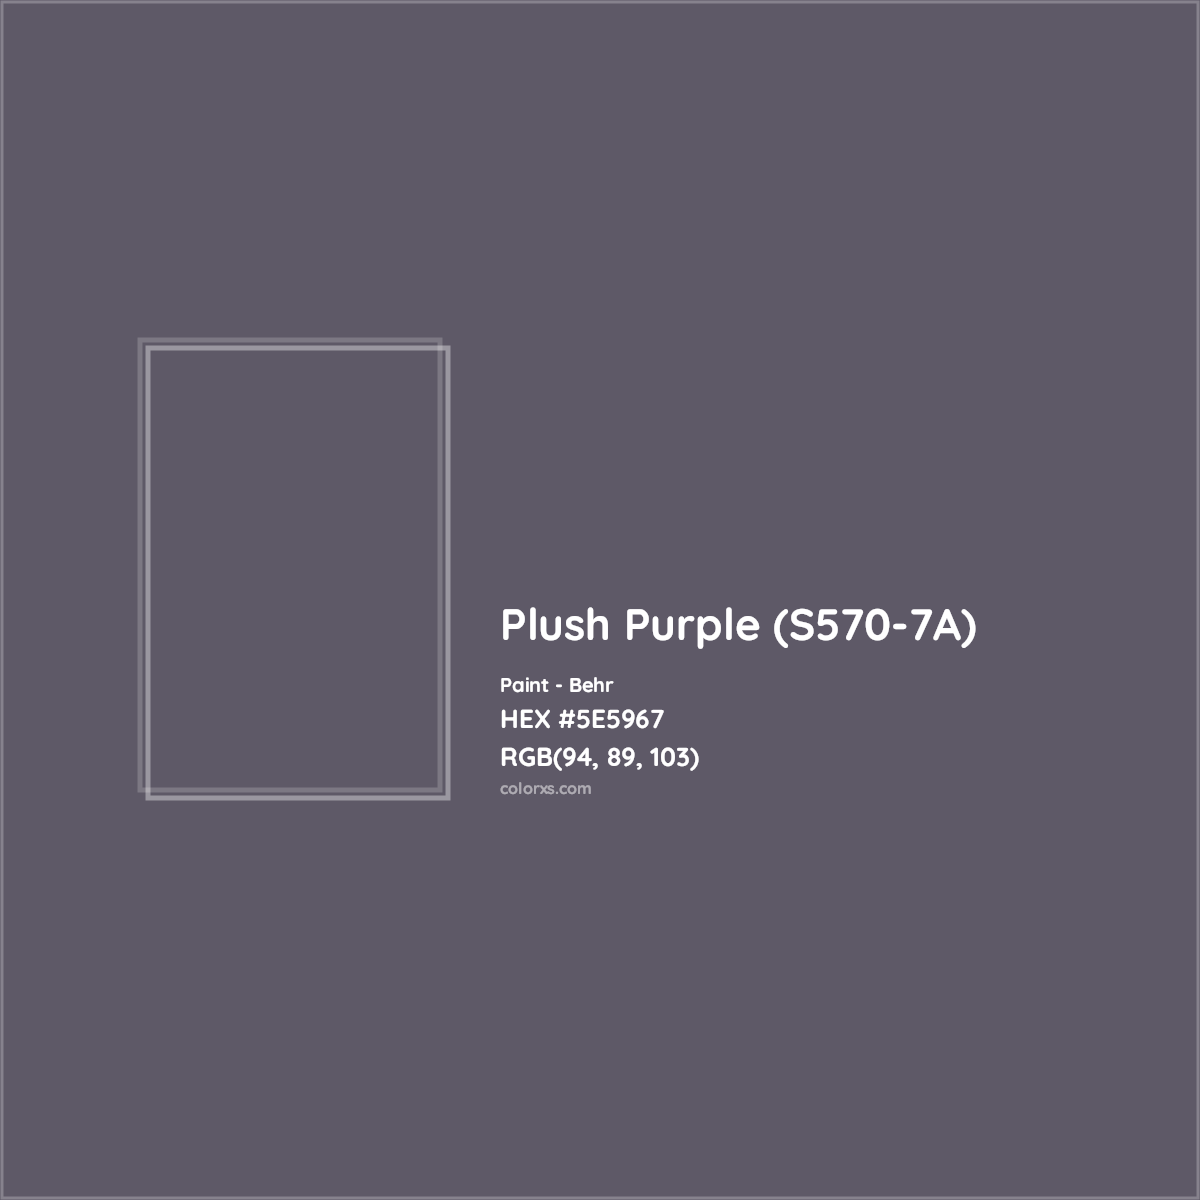 HEX #5E5967 Plush Purple (S570-7A) Paint Behr - Color Code